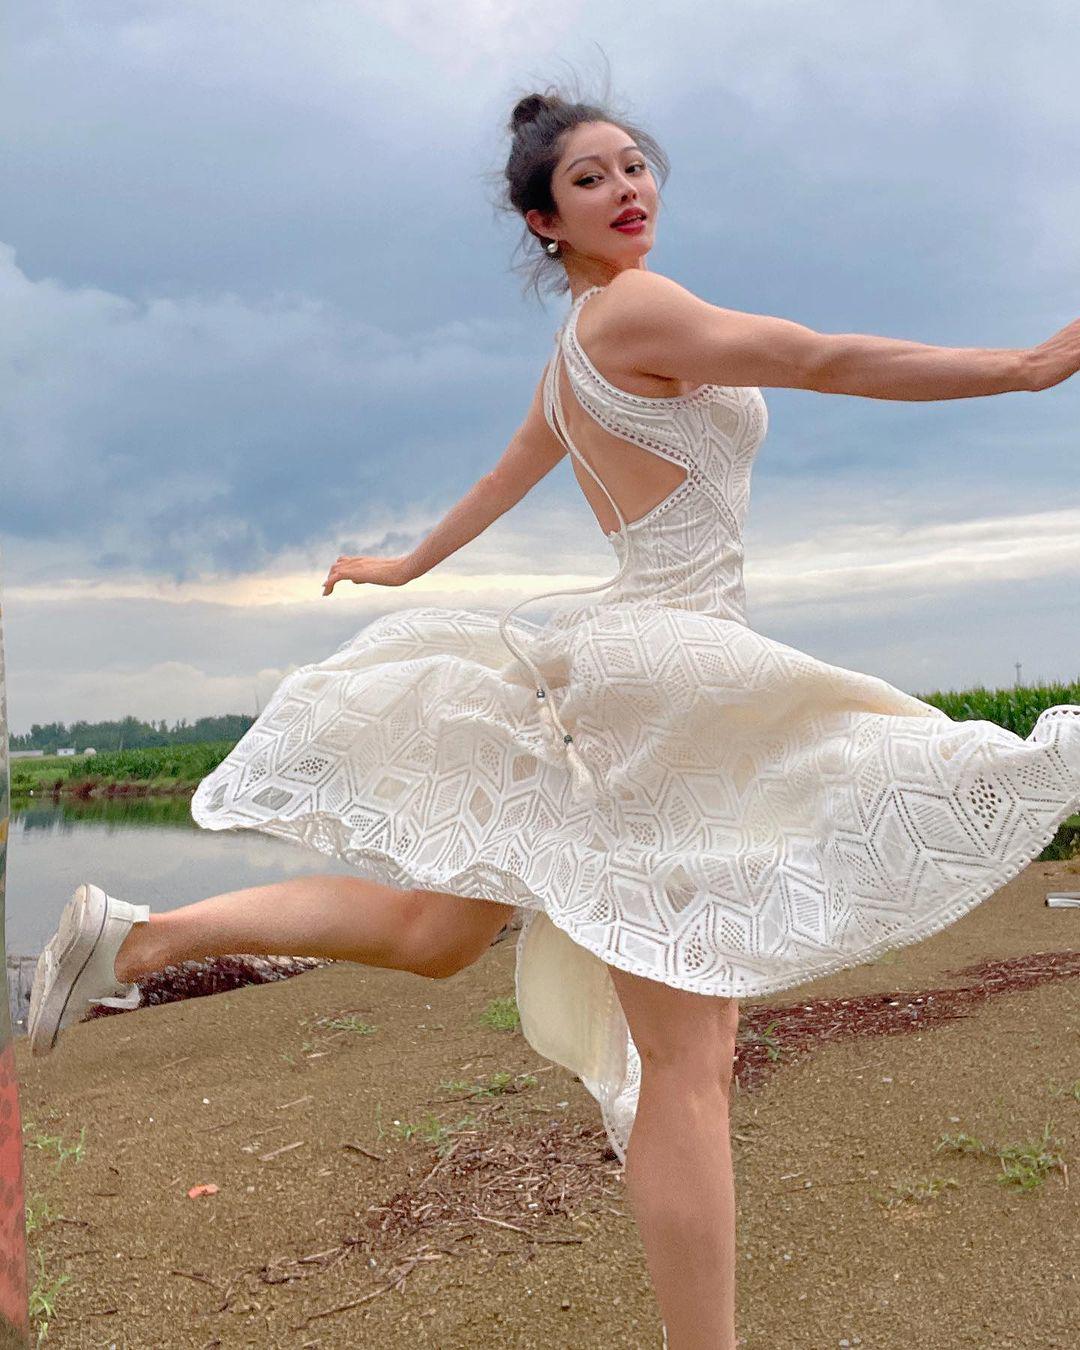 "Thiên thần cơ bắp hot nhất Trung Quốc" diện váy bó sát tôn đường cong quyến rũ - 4